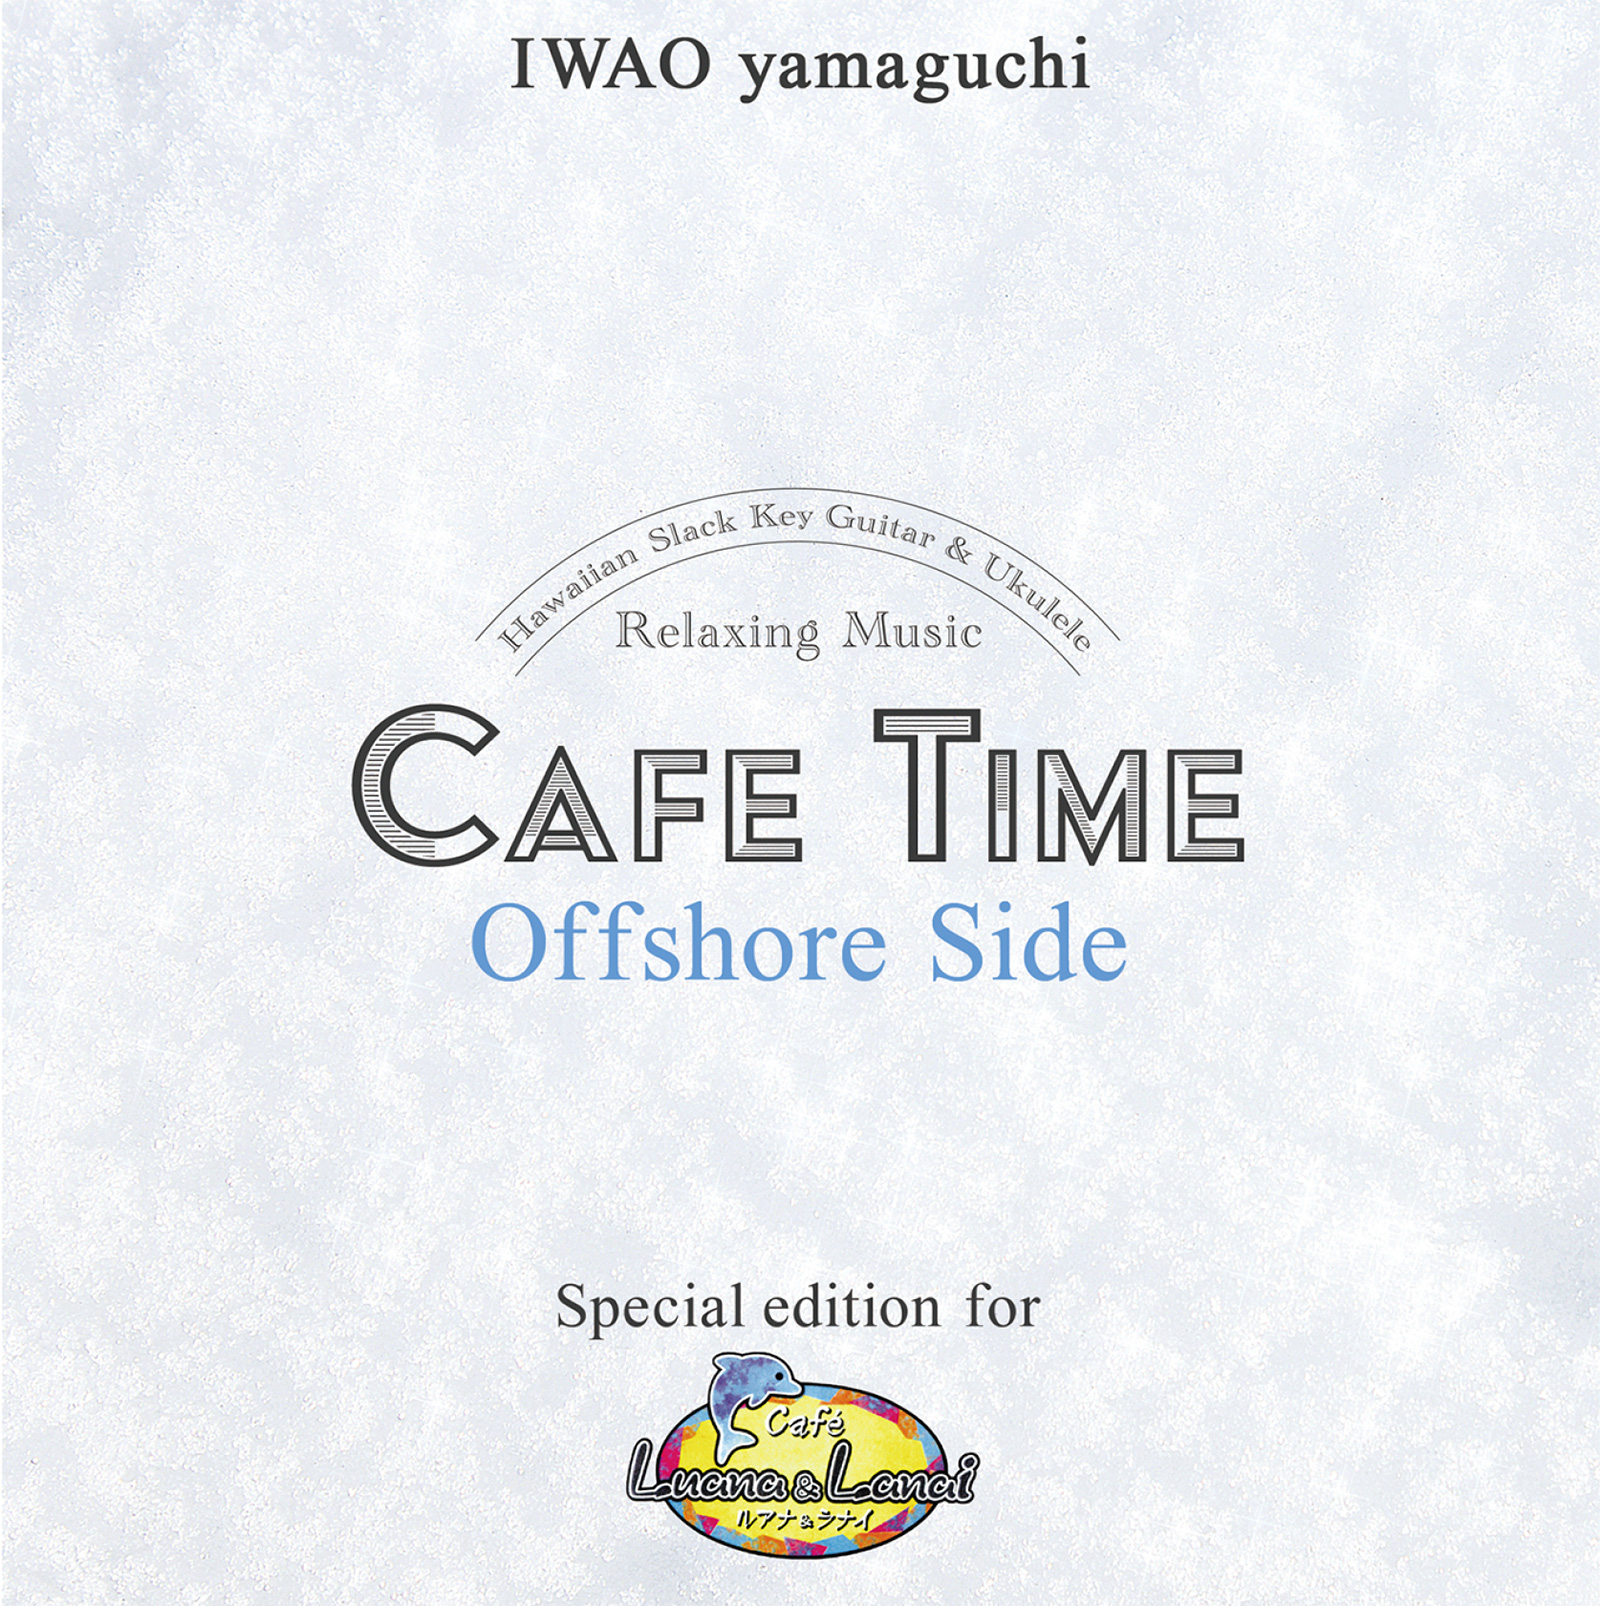 Cafe Time Offshore Side オーシャンビュー Web Shop